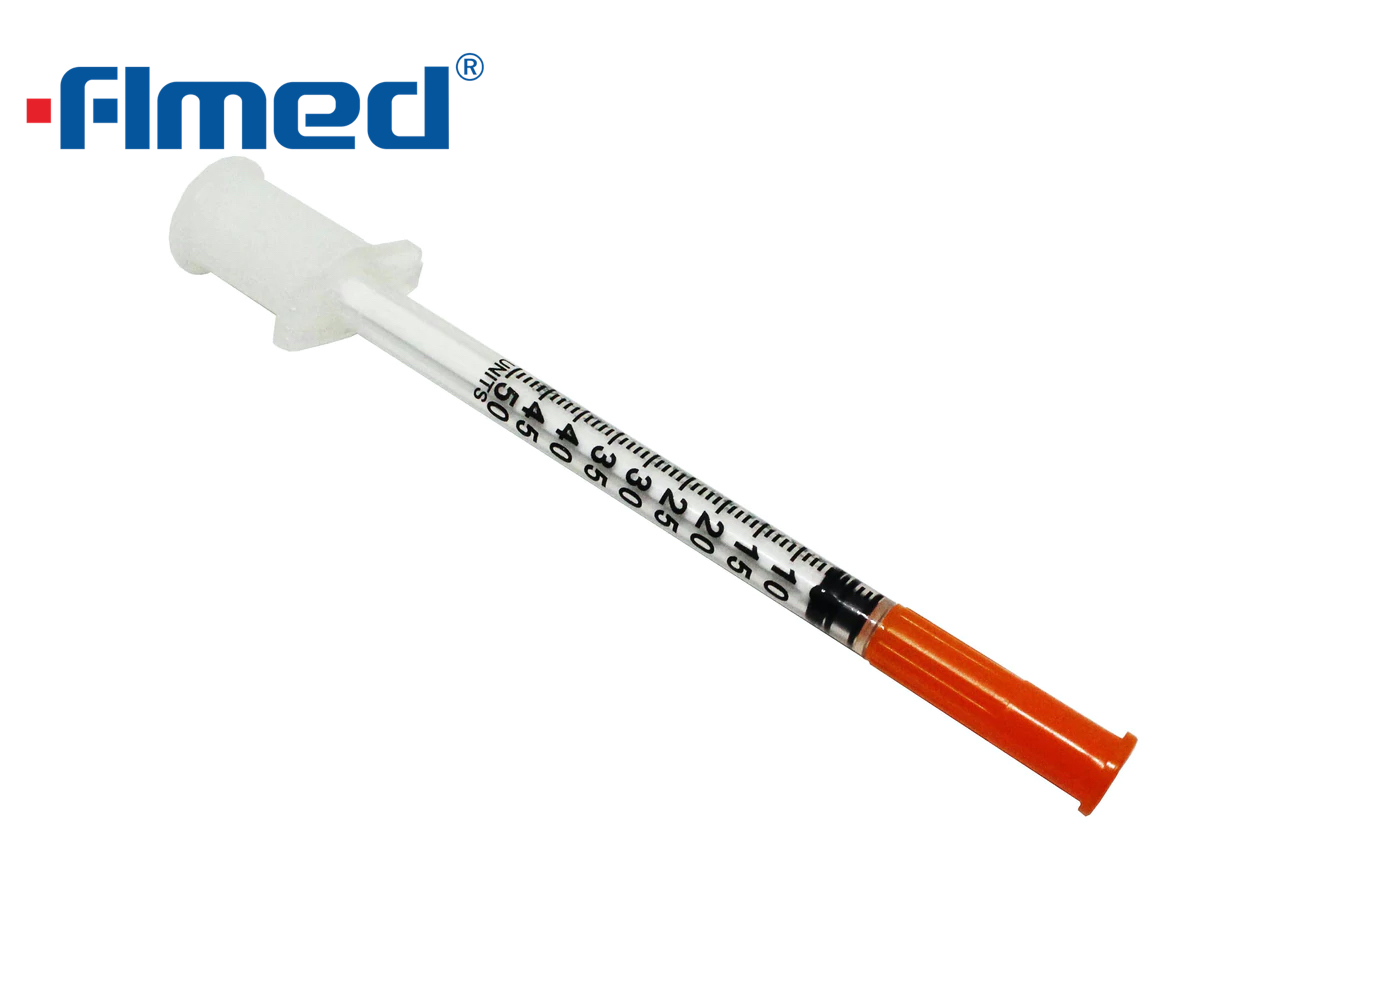 0,5 ml de insulina seringa e agulha 30g x 8mm (30g x 5/16 "polegada)